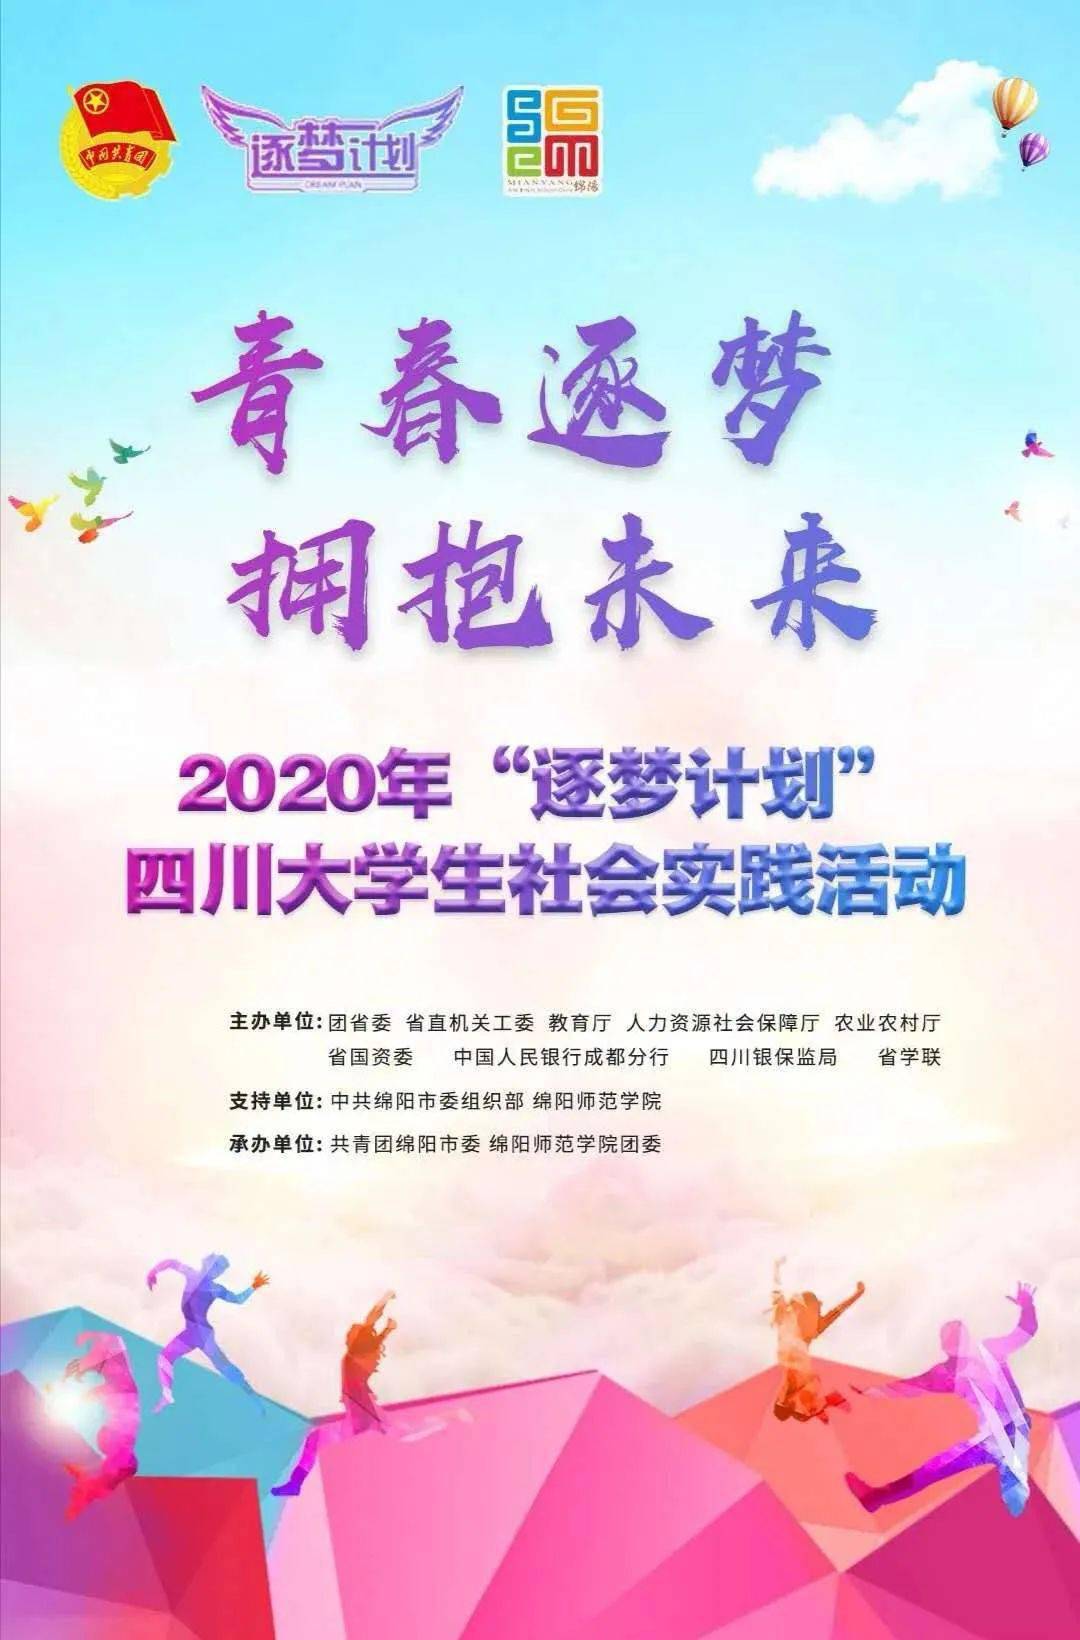 青春逐梦,拥抱未来 || 2020年"逐梦计划"四川大学生社会实践活动已